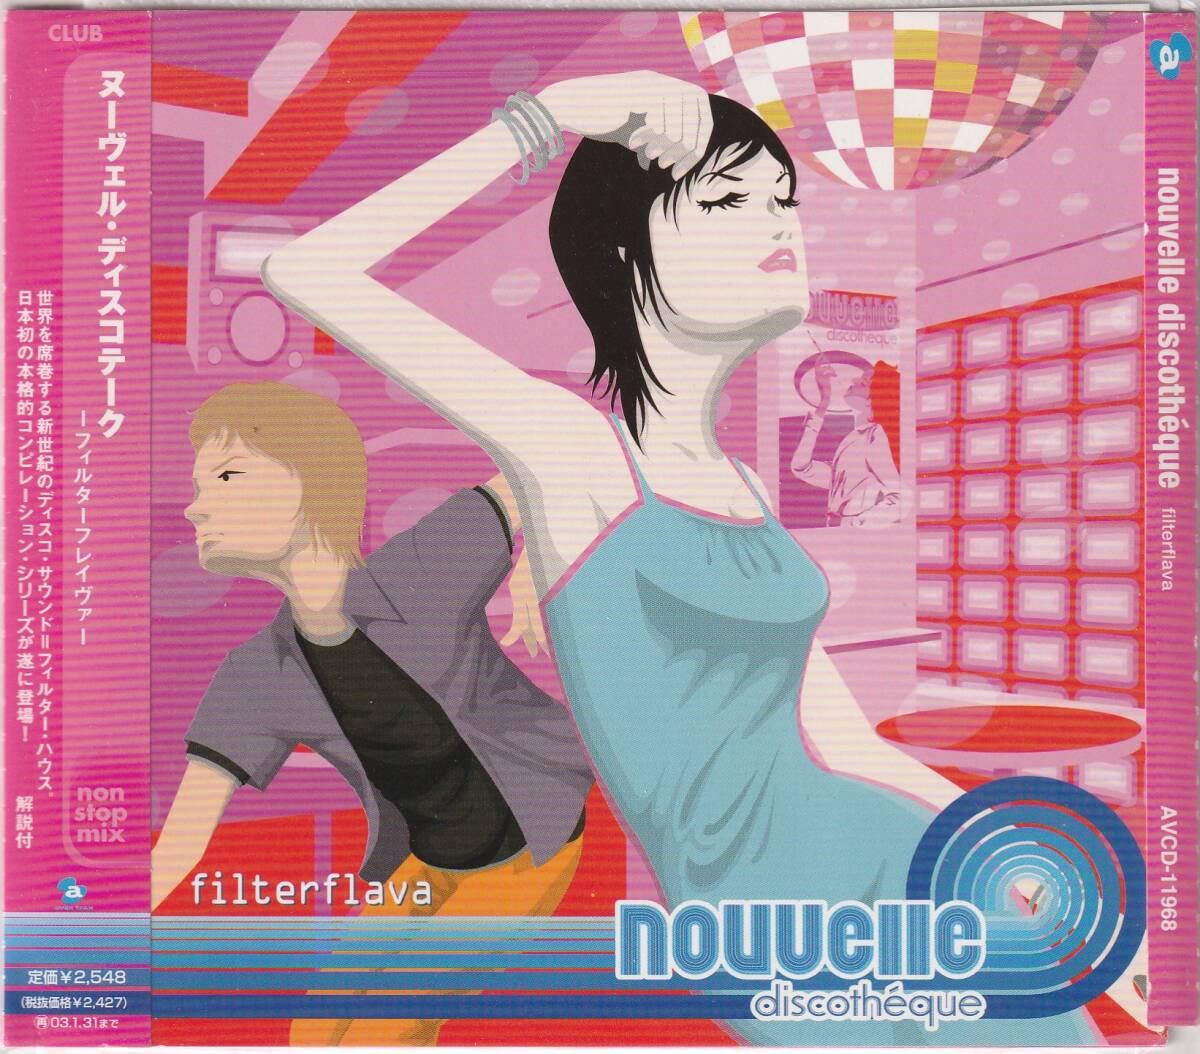 プロモ★Filter House Mix CD★Nouvelle Dicsotheque Filter Flava Non-stop Mix:DJ CSK★2001年★Bob Marley・一部試聴可能の画像1